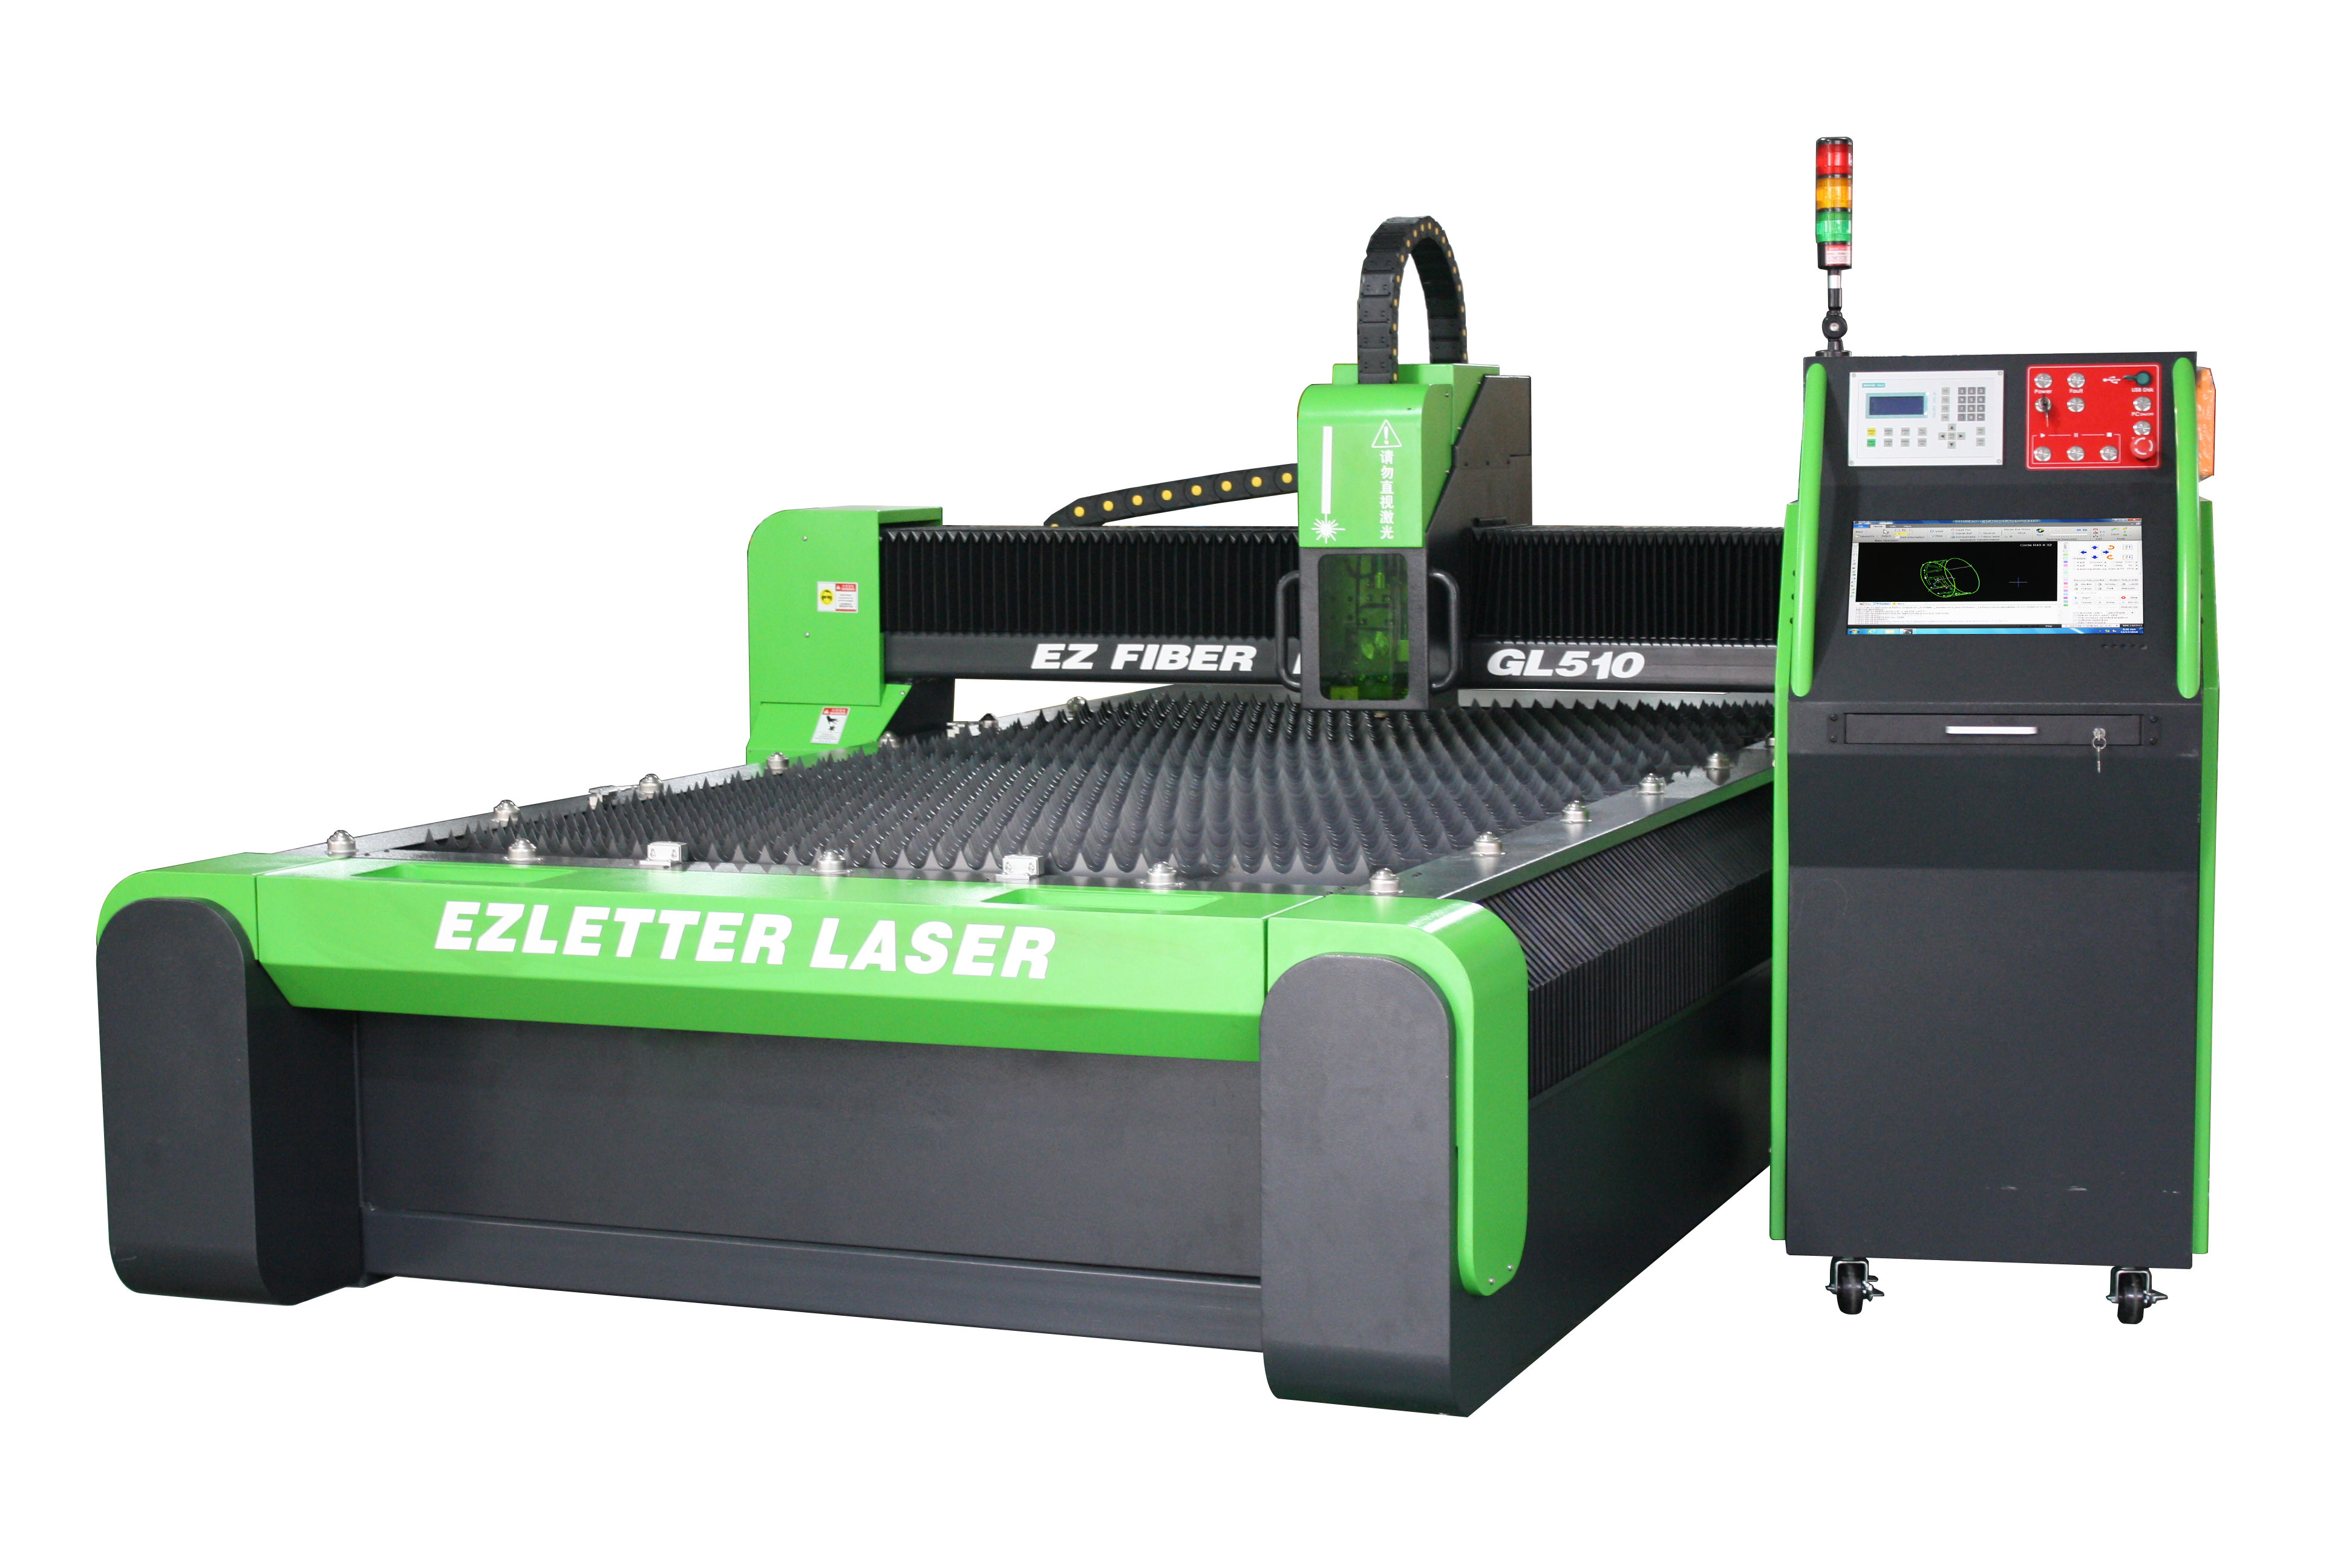  EZCNC Fiber Laser Sheet Metal Cutter GL510 IPG Laser/WSX laser cutting head Manufactures